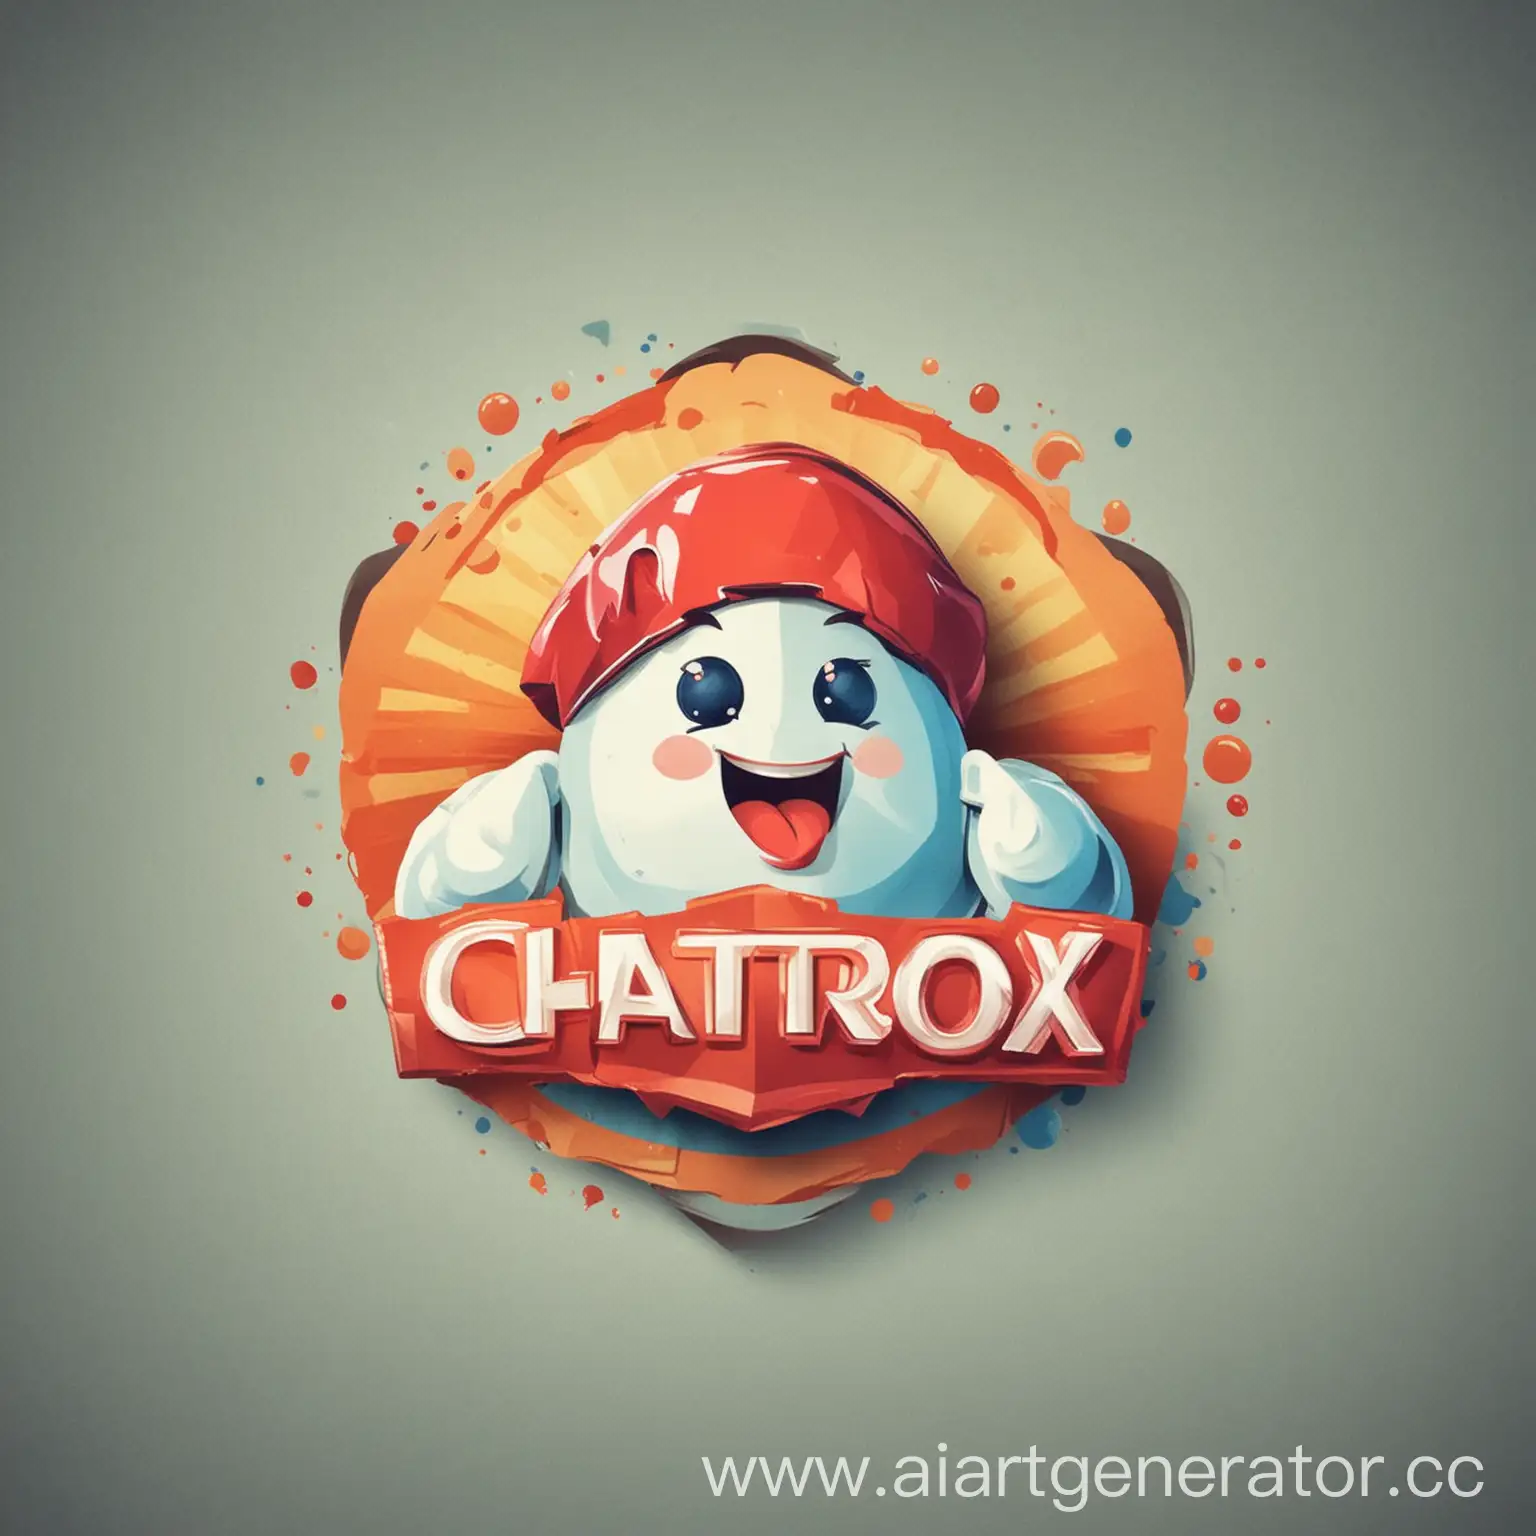 Создай логотип для компании "Chatterbox Central". Нужен красивый логотип по теме названия компании